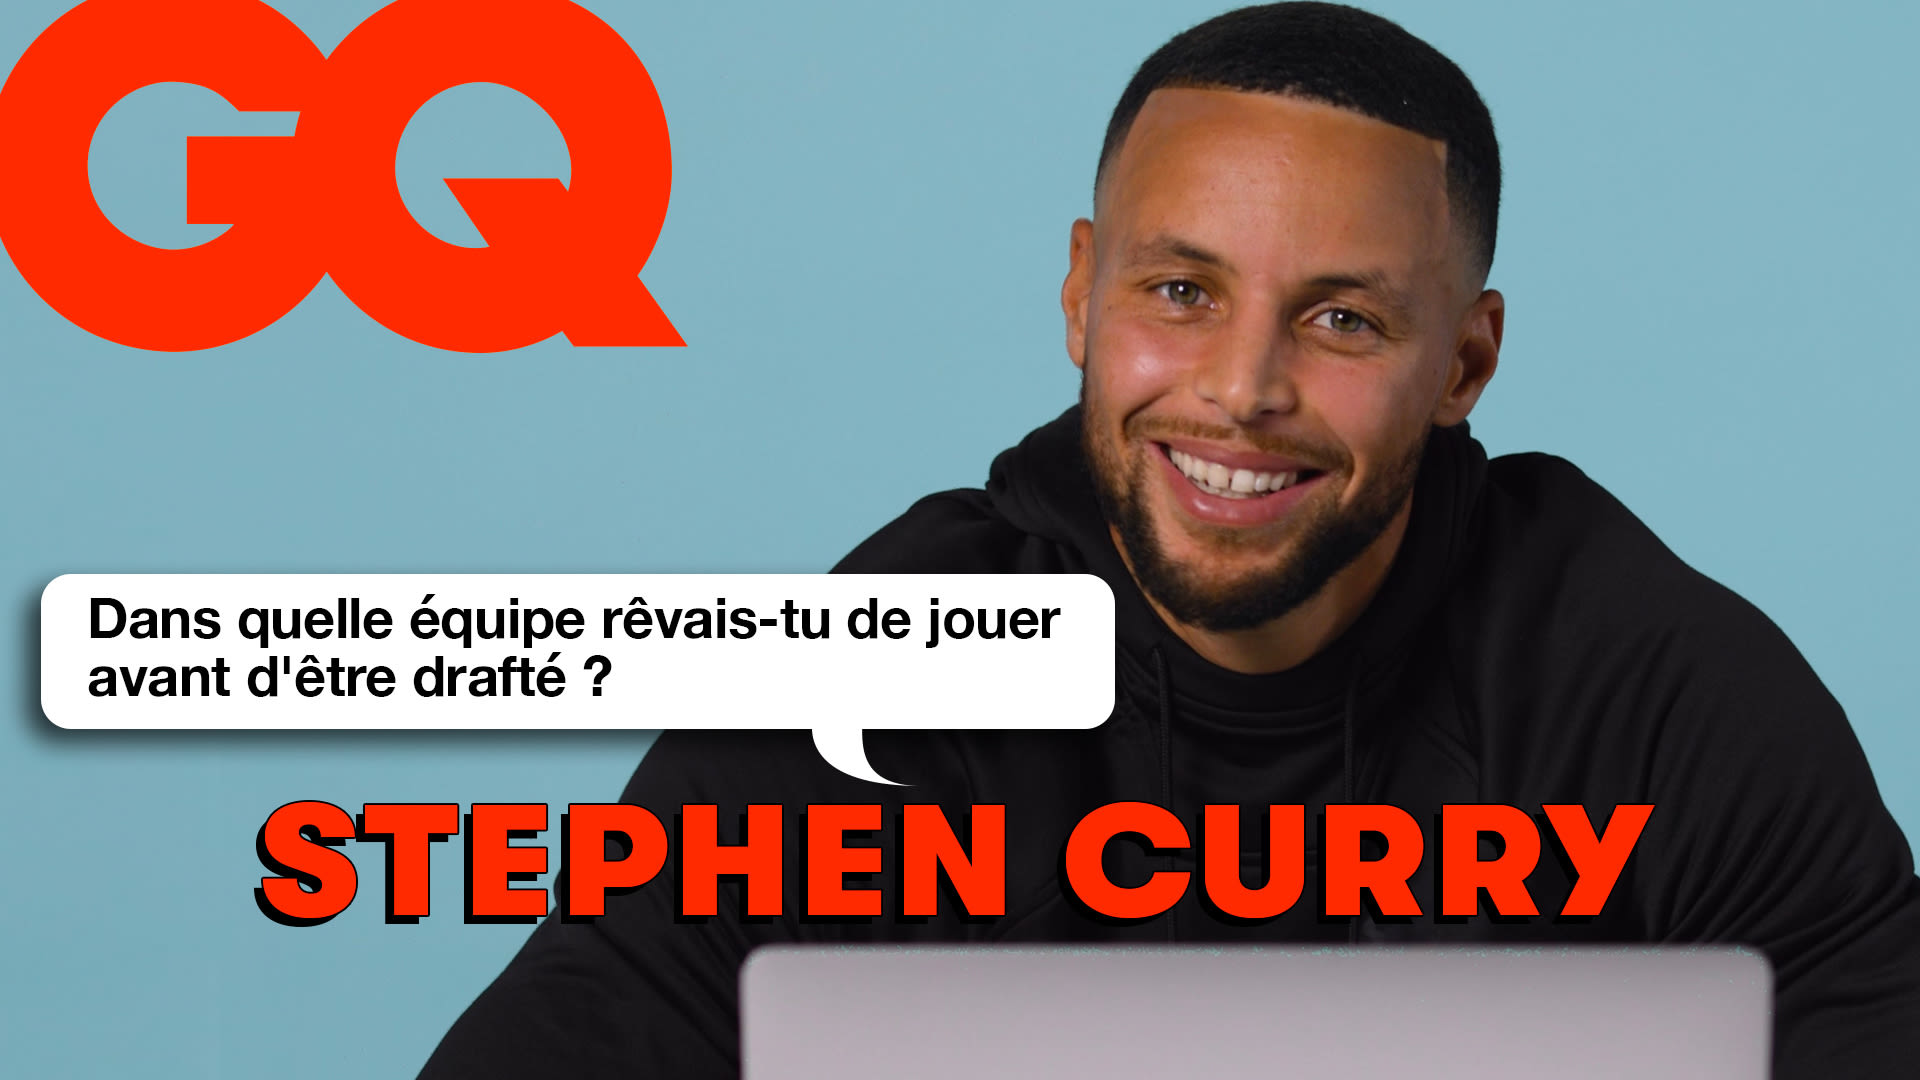 Stephen Curry infiltre les réseaux : Twitter, Instagram, TikTok...